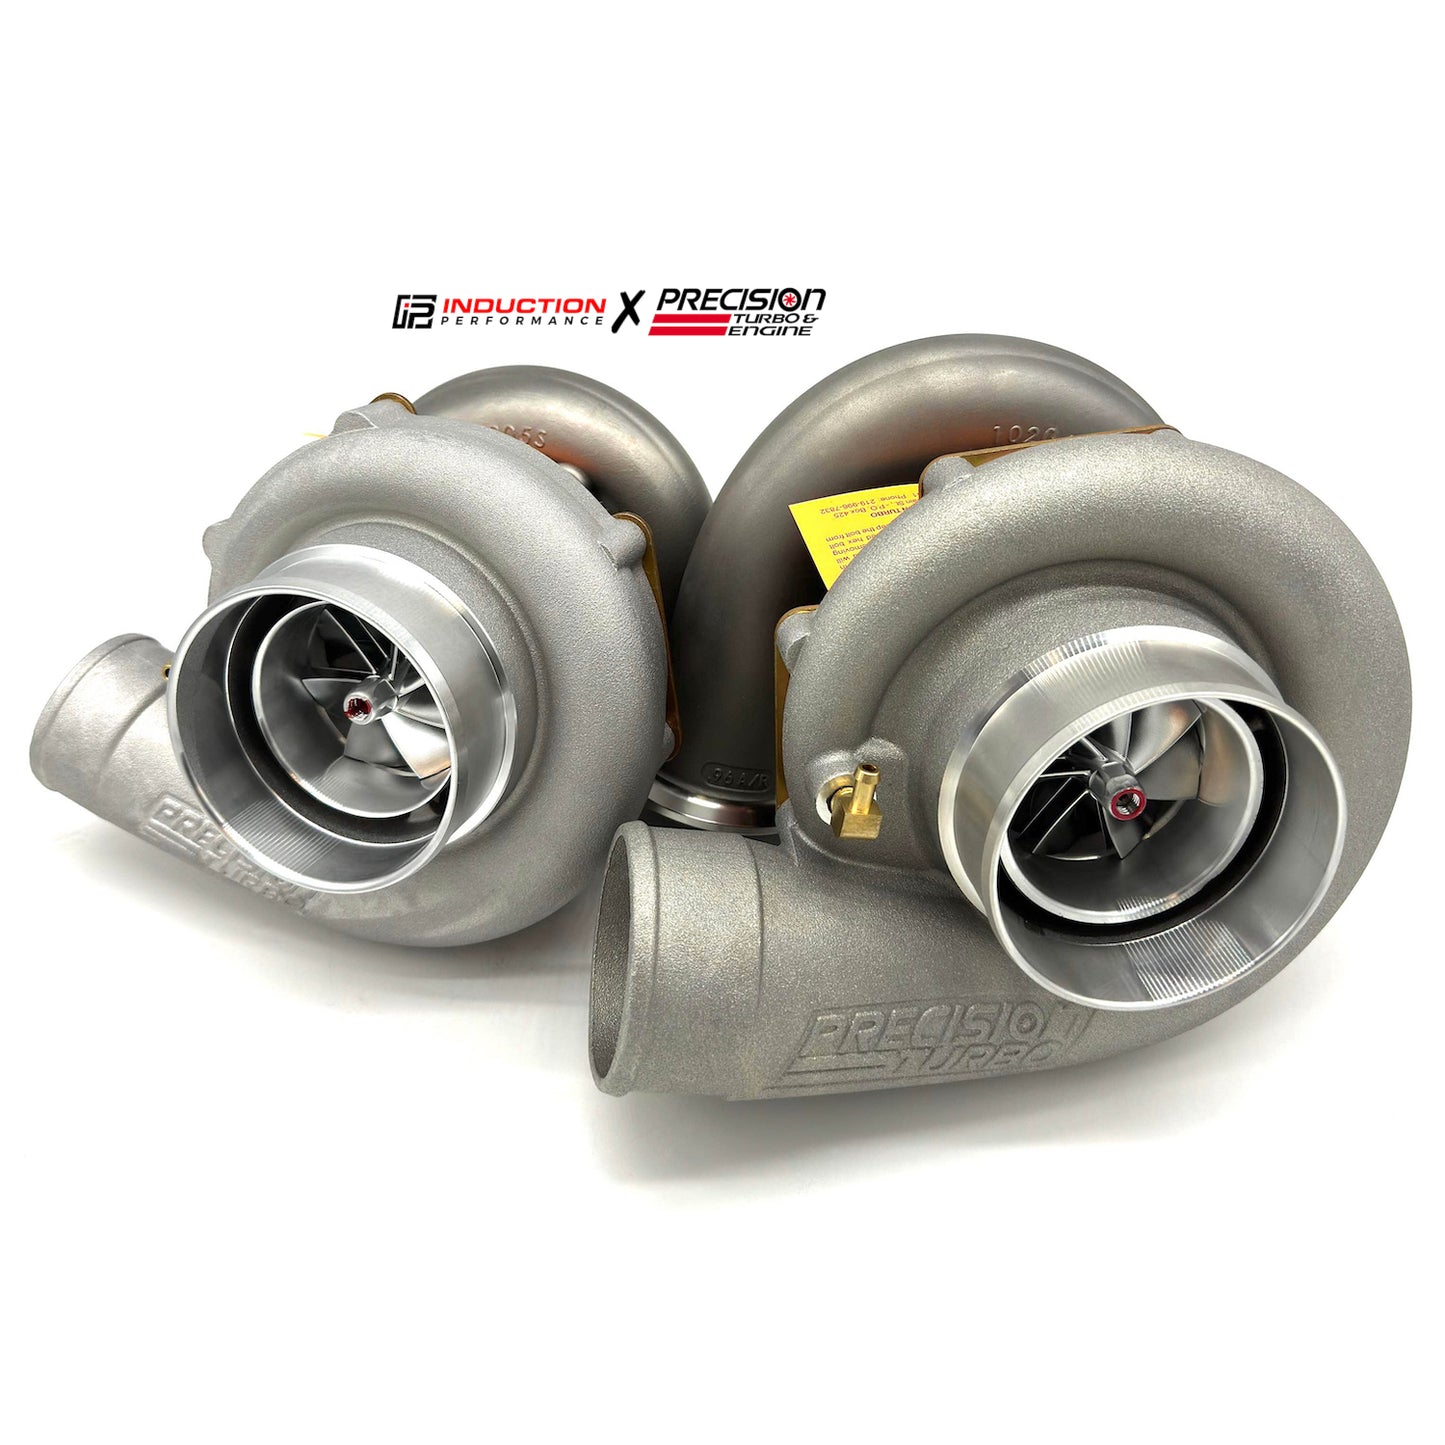 BIENTÔT - Turbo et moteur de précision - Next Gen 6870 CEA - Turbocompresseur de course 